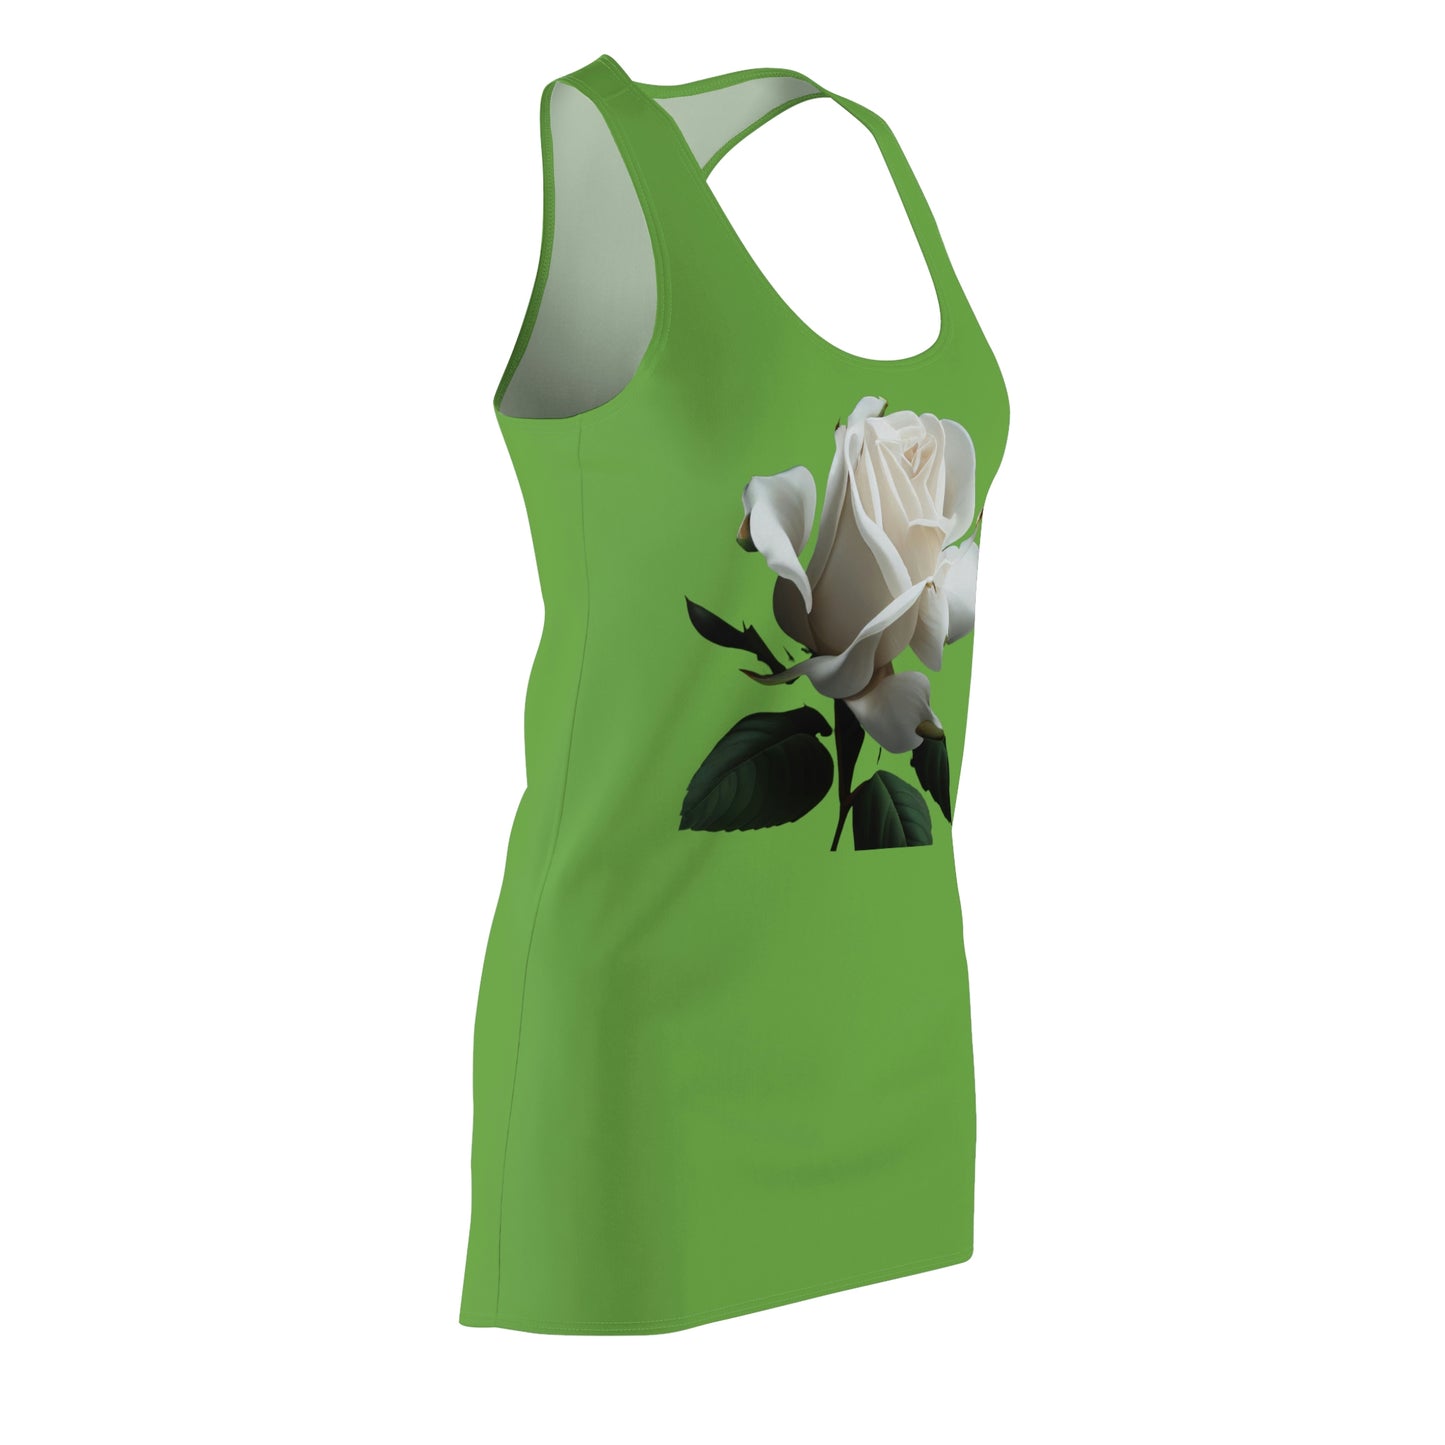 White Rose on Light Green - Women's Cut & Sew Racerback Dress